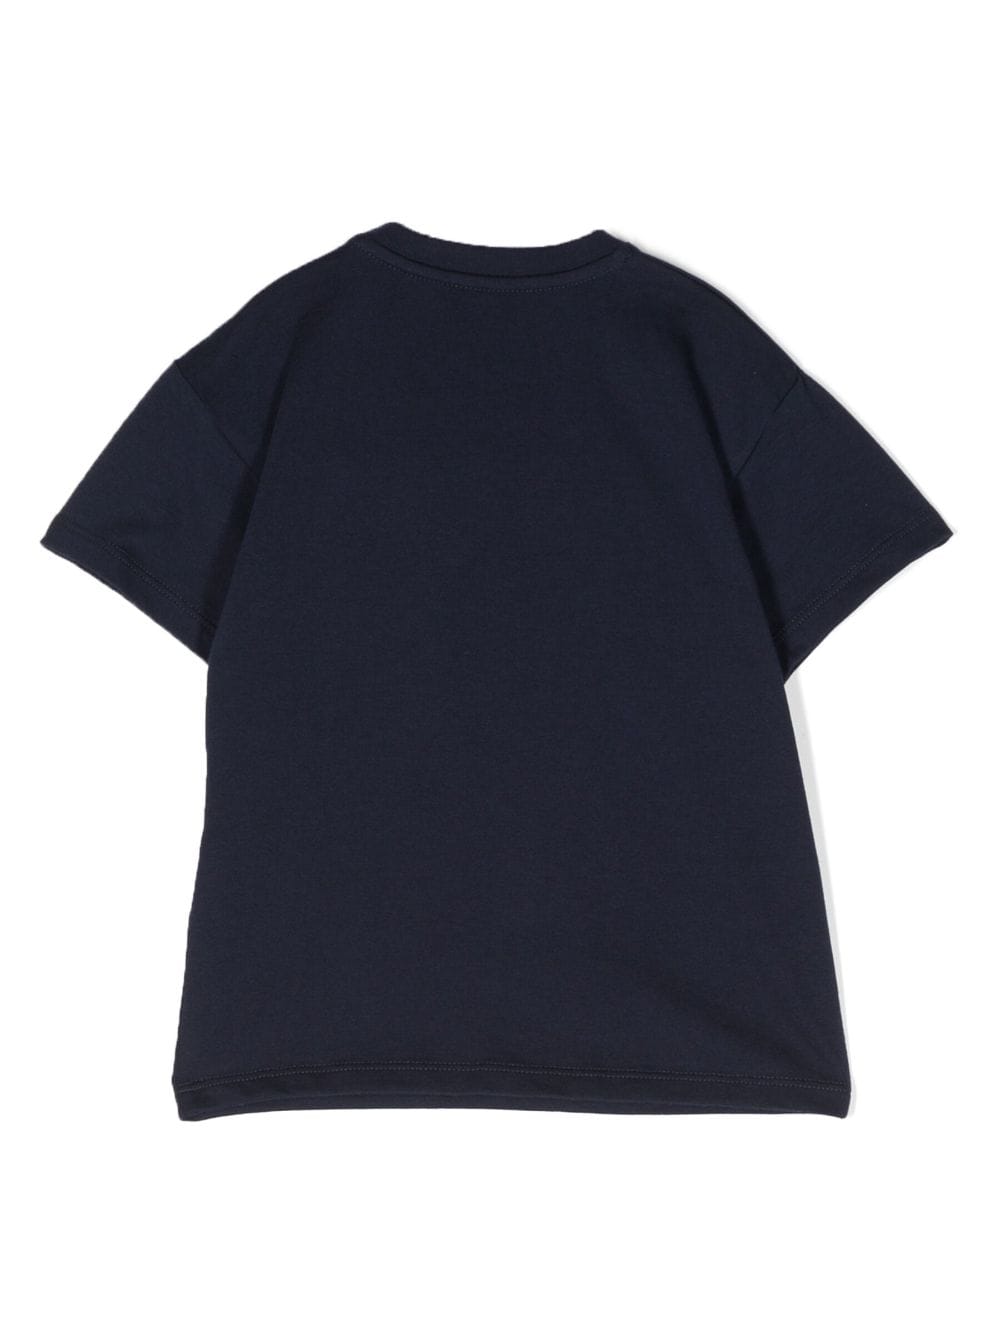 T-shirt blu neonato unisex